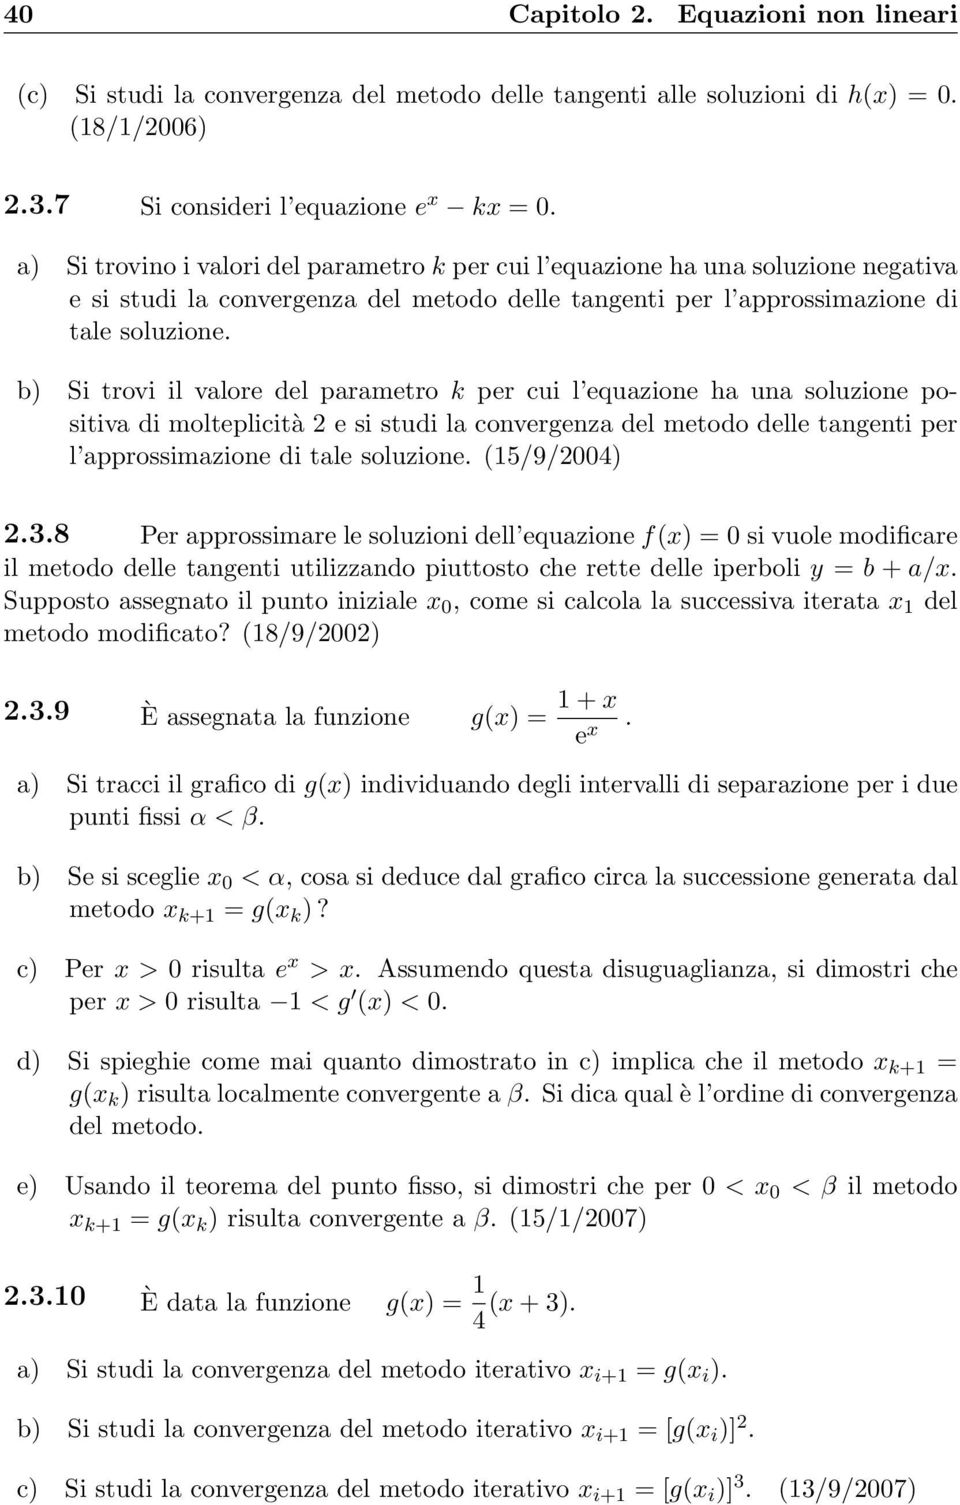 b) Si trovi il valore del parametro k per cui l equazione ha una soluzione positiva di molteplicità 2 e si studi la convergenza del metodo delle tangenti per l approssimazione di tale soluzione.